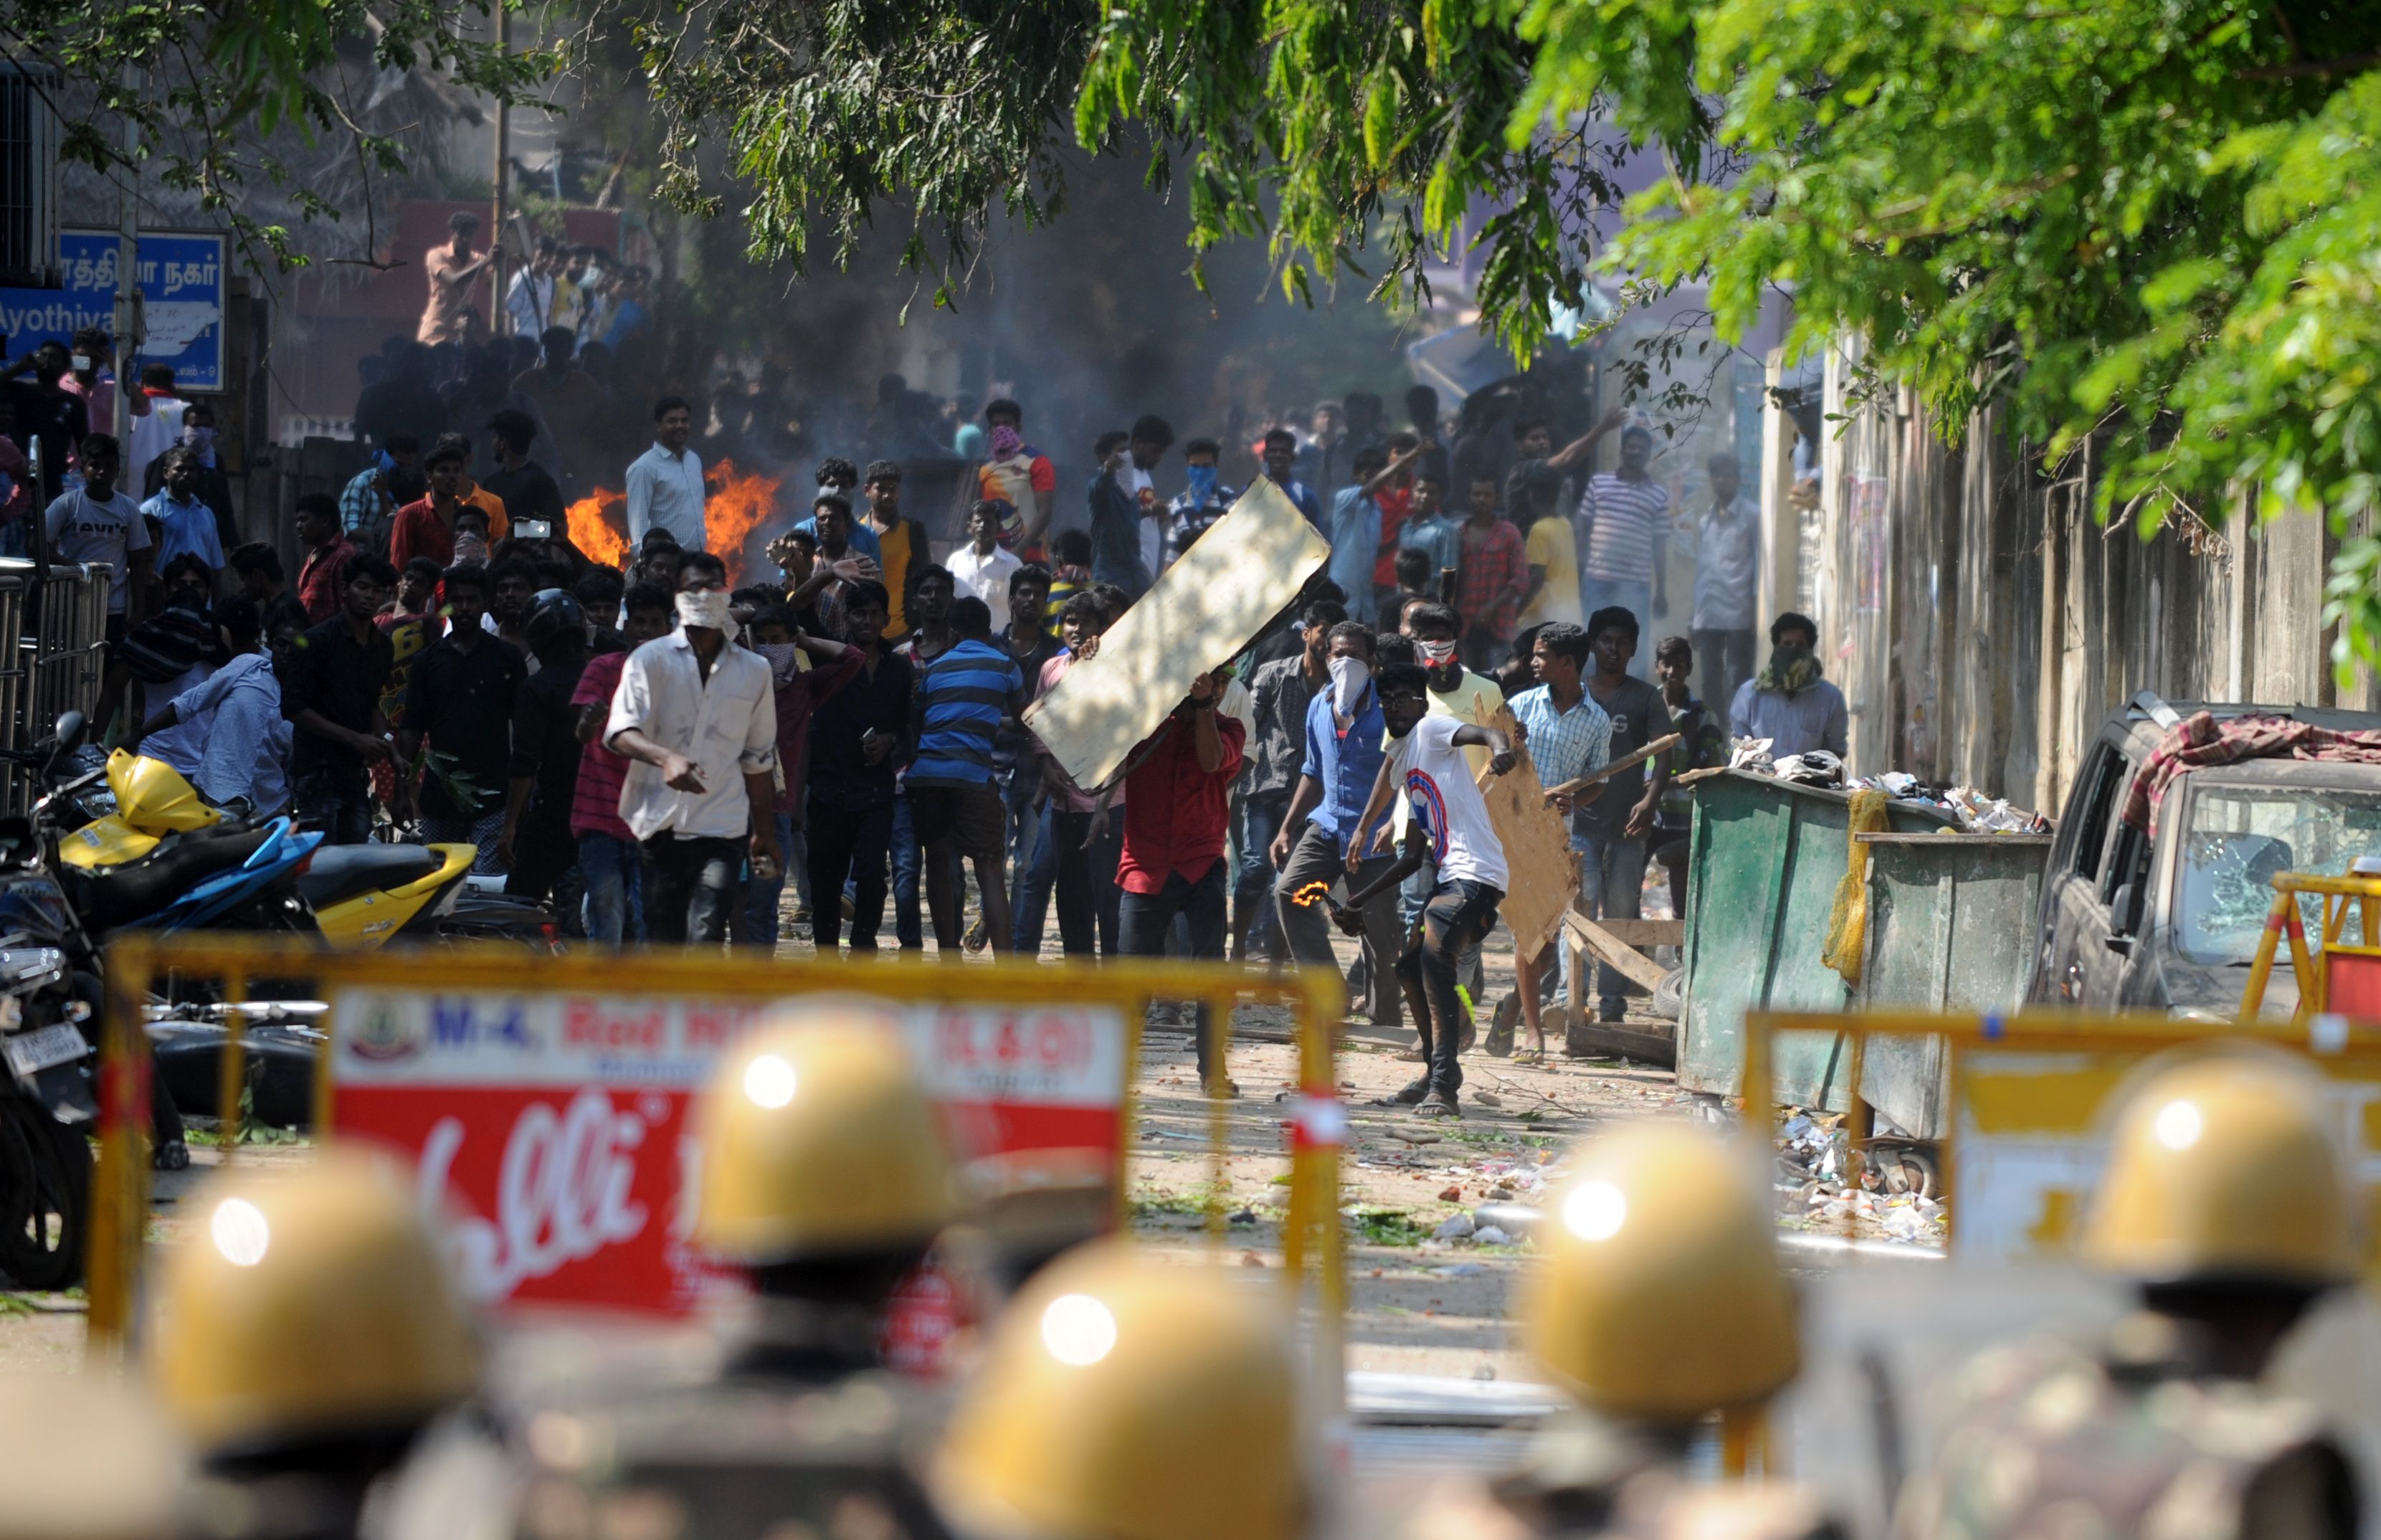 احتجاجات عنيفة فى الهند ضد قرار حظر مصارعة الثيران